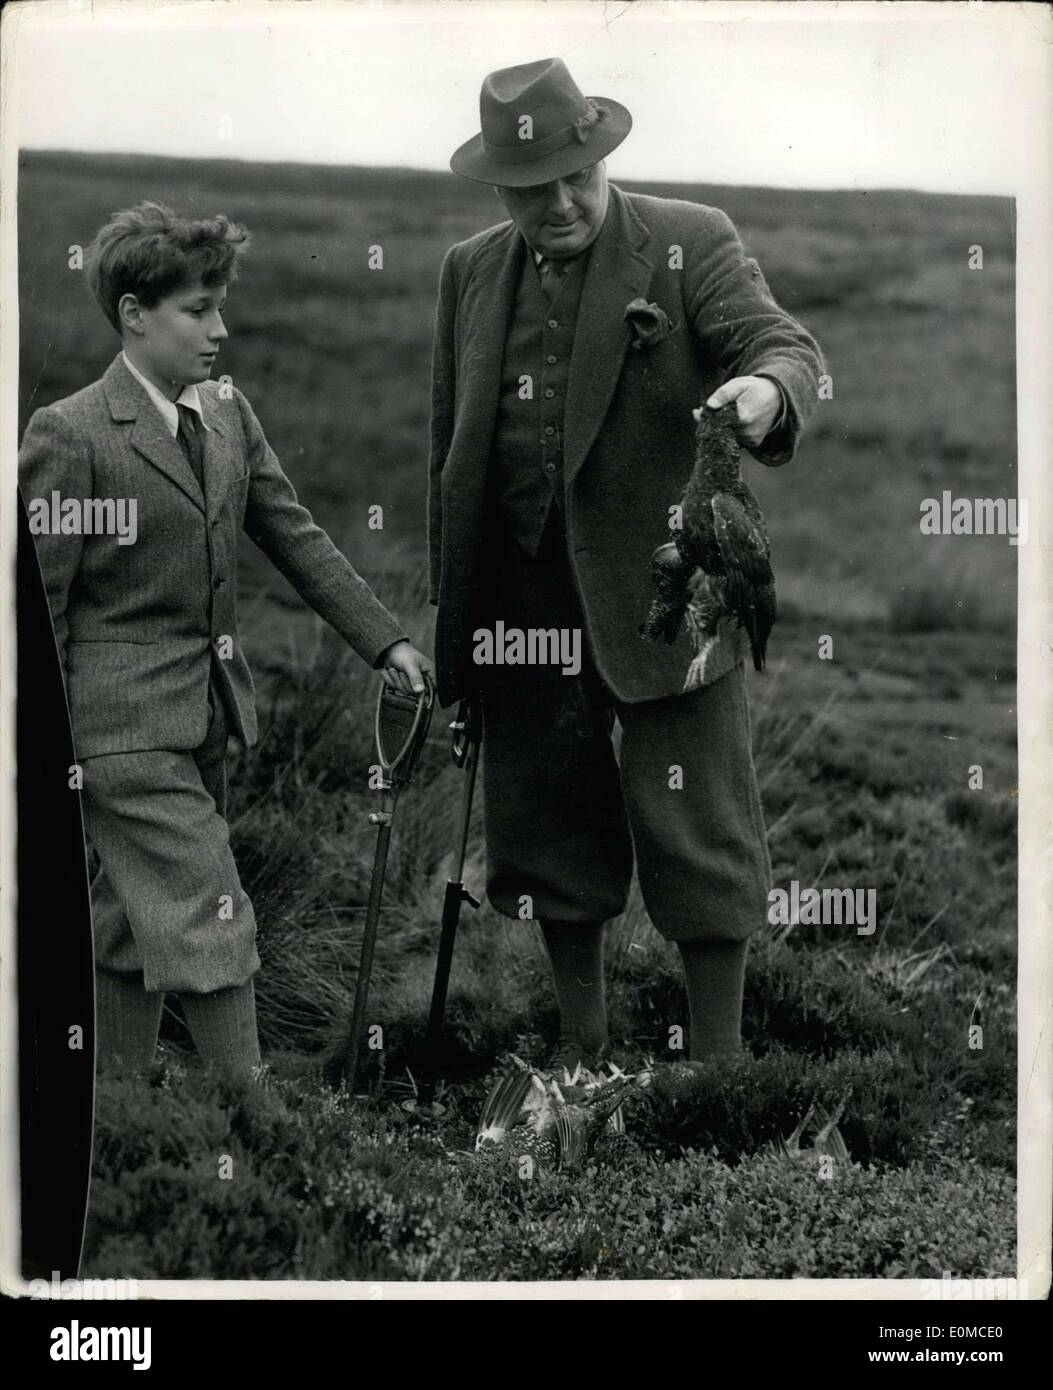 13 août 1954 - 13-8-54 la glorieuse douzième . Ouverture de la saison de chasse Grouse hier, c'était le glorieux douzième , et Lord Swinton's party, cinq canons en tout, étaient à Pott Moor, Grimes, Gyhll dans le Yorkshire. Photo : Keystone montre sir Thomas Dugdale, ancien ministre de l'Agriculture vu avec son fils. Banque D'Images